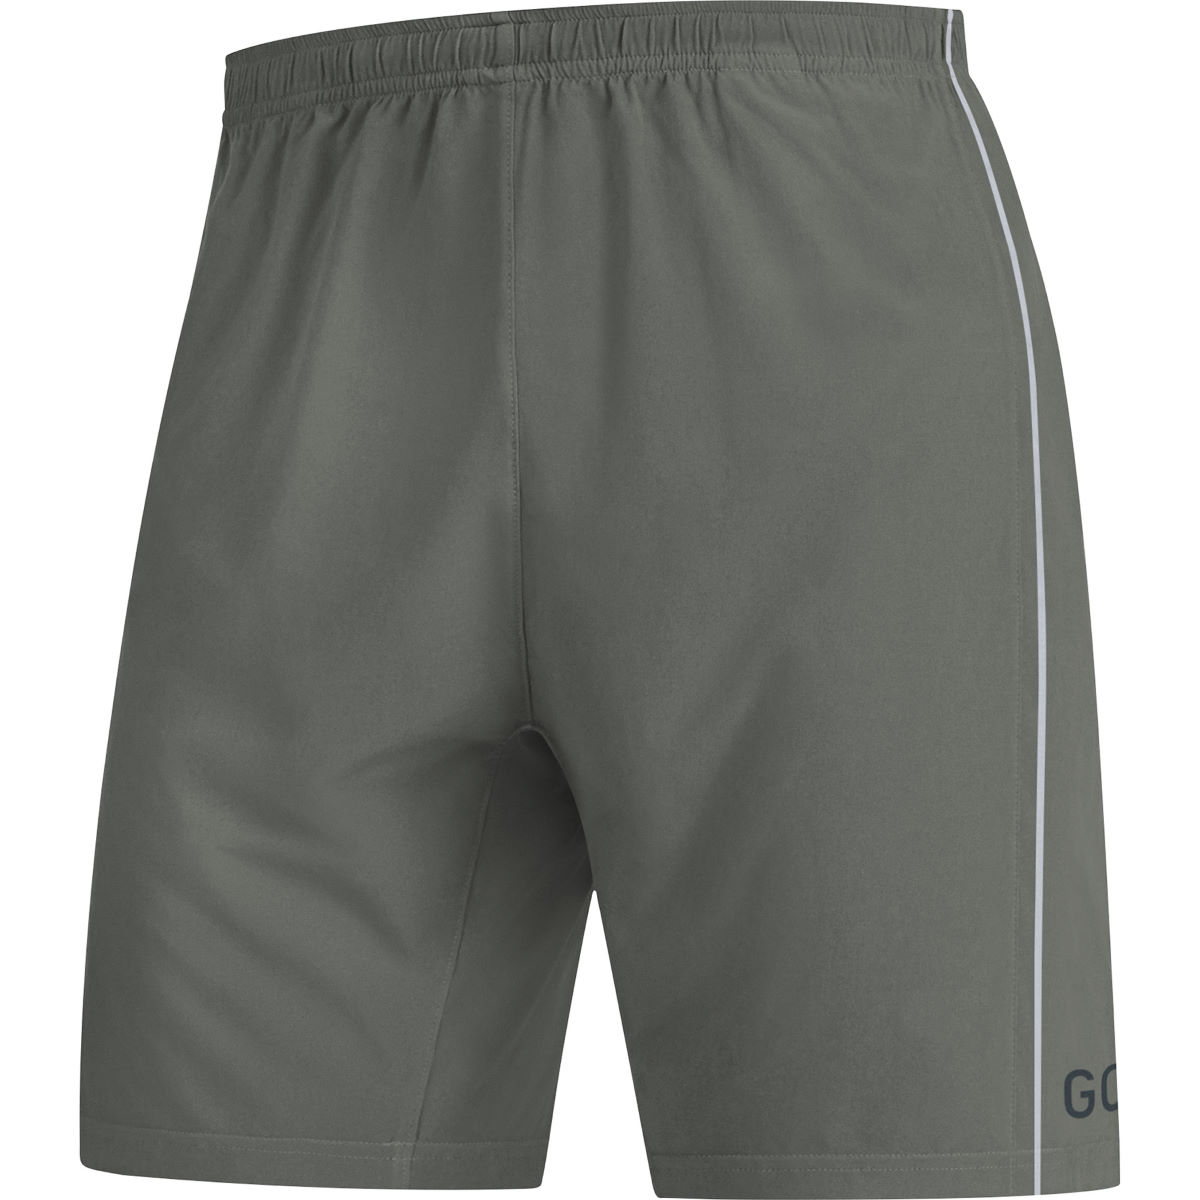 Pantalón corto Gore Wear R5 - Pantalones cortos